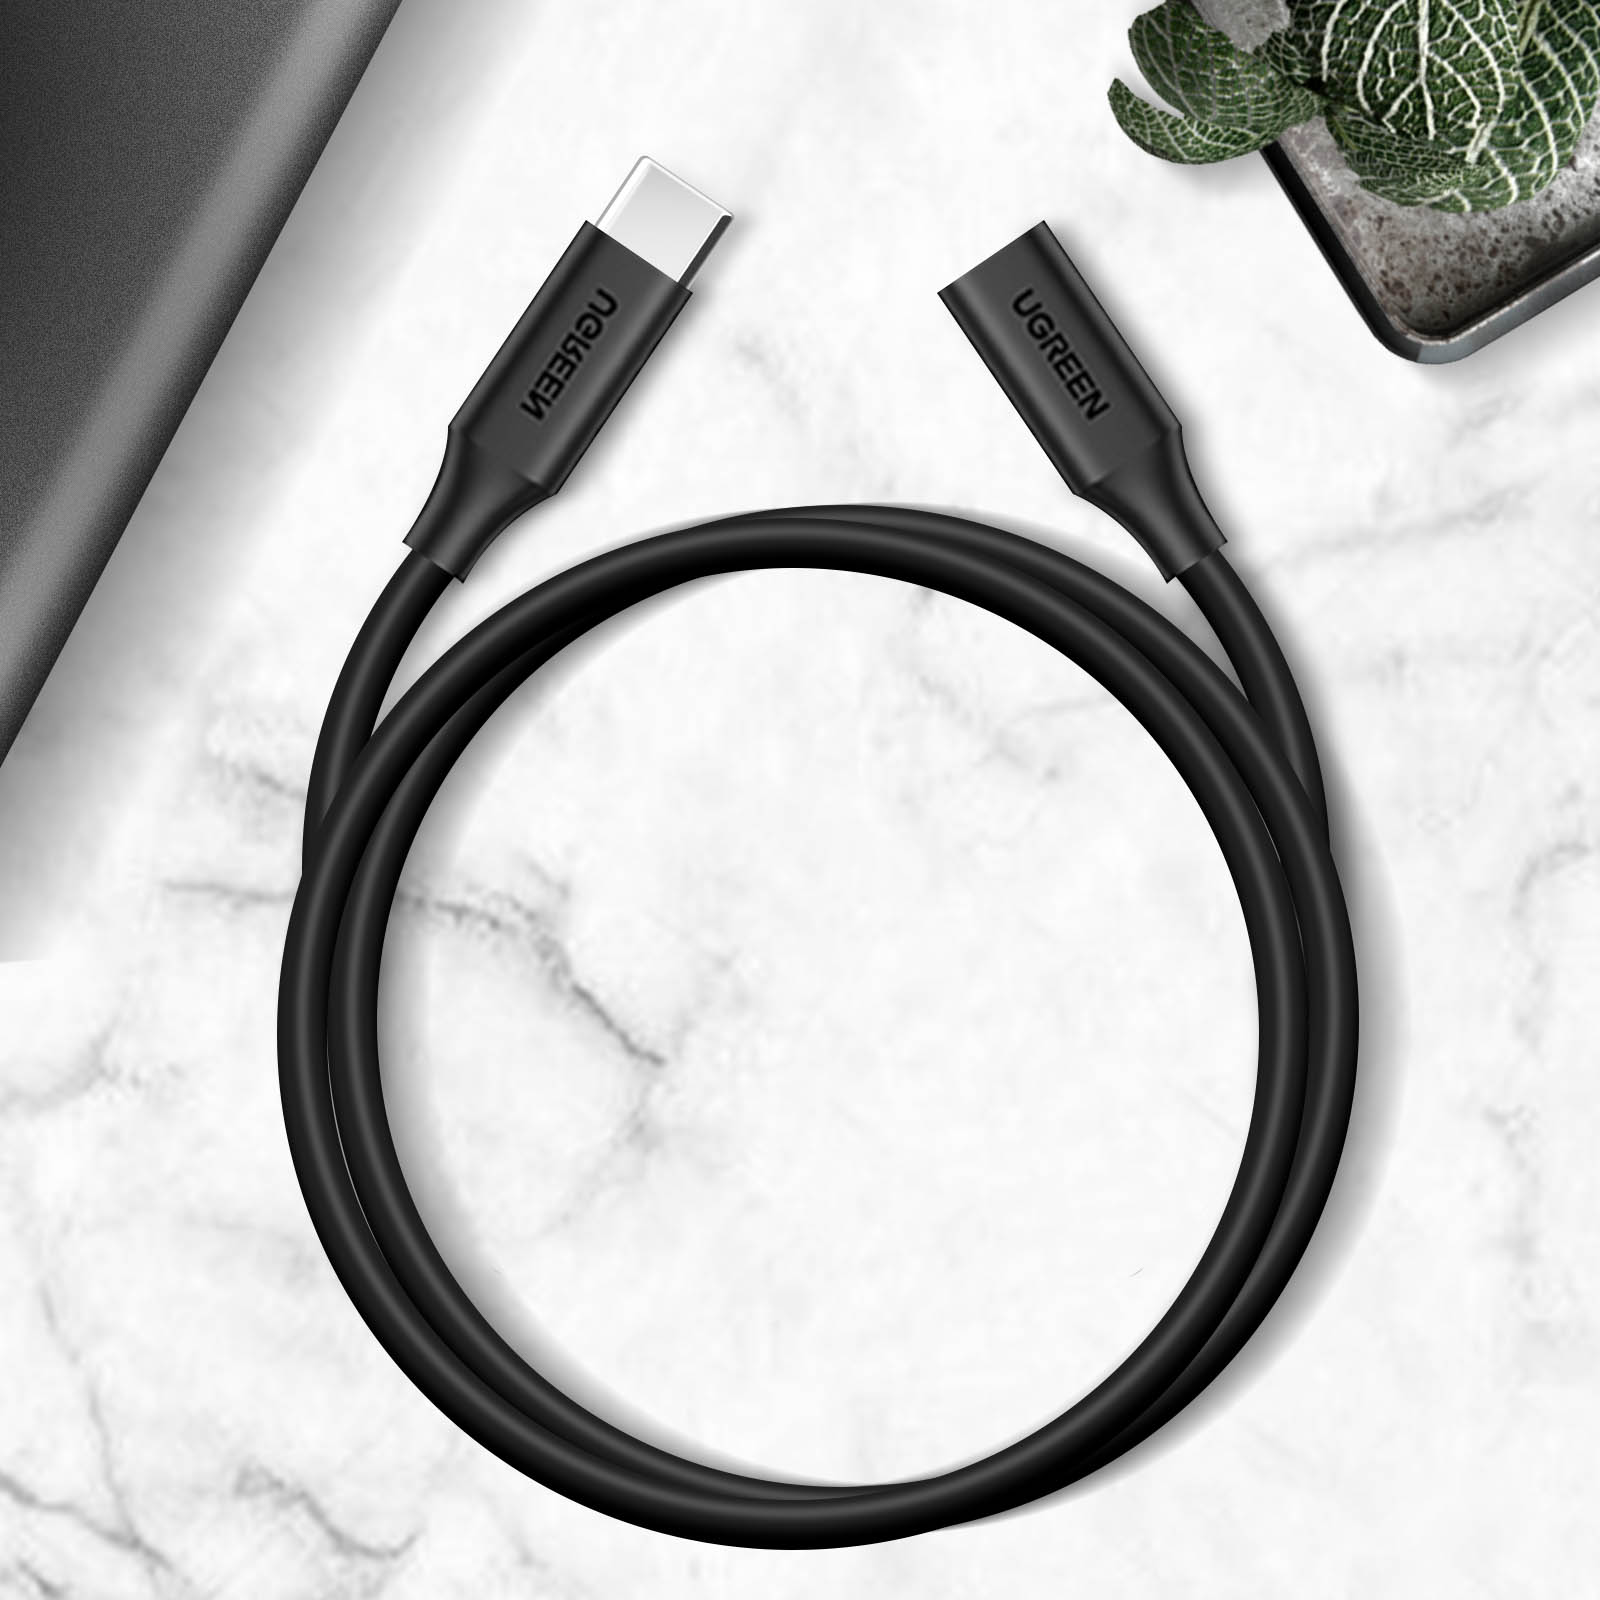 Cables USB IVanky Rallonge usb c, câble d'extension type c mâle à  femelle thunderbolt 3 compatible, supporte chargement/synchronisation/vidéo  4k pour macbook pro